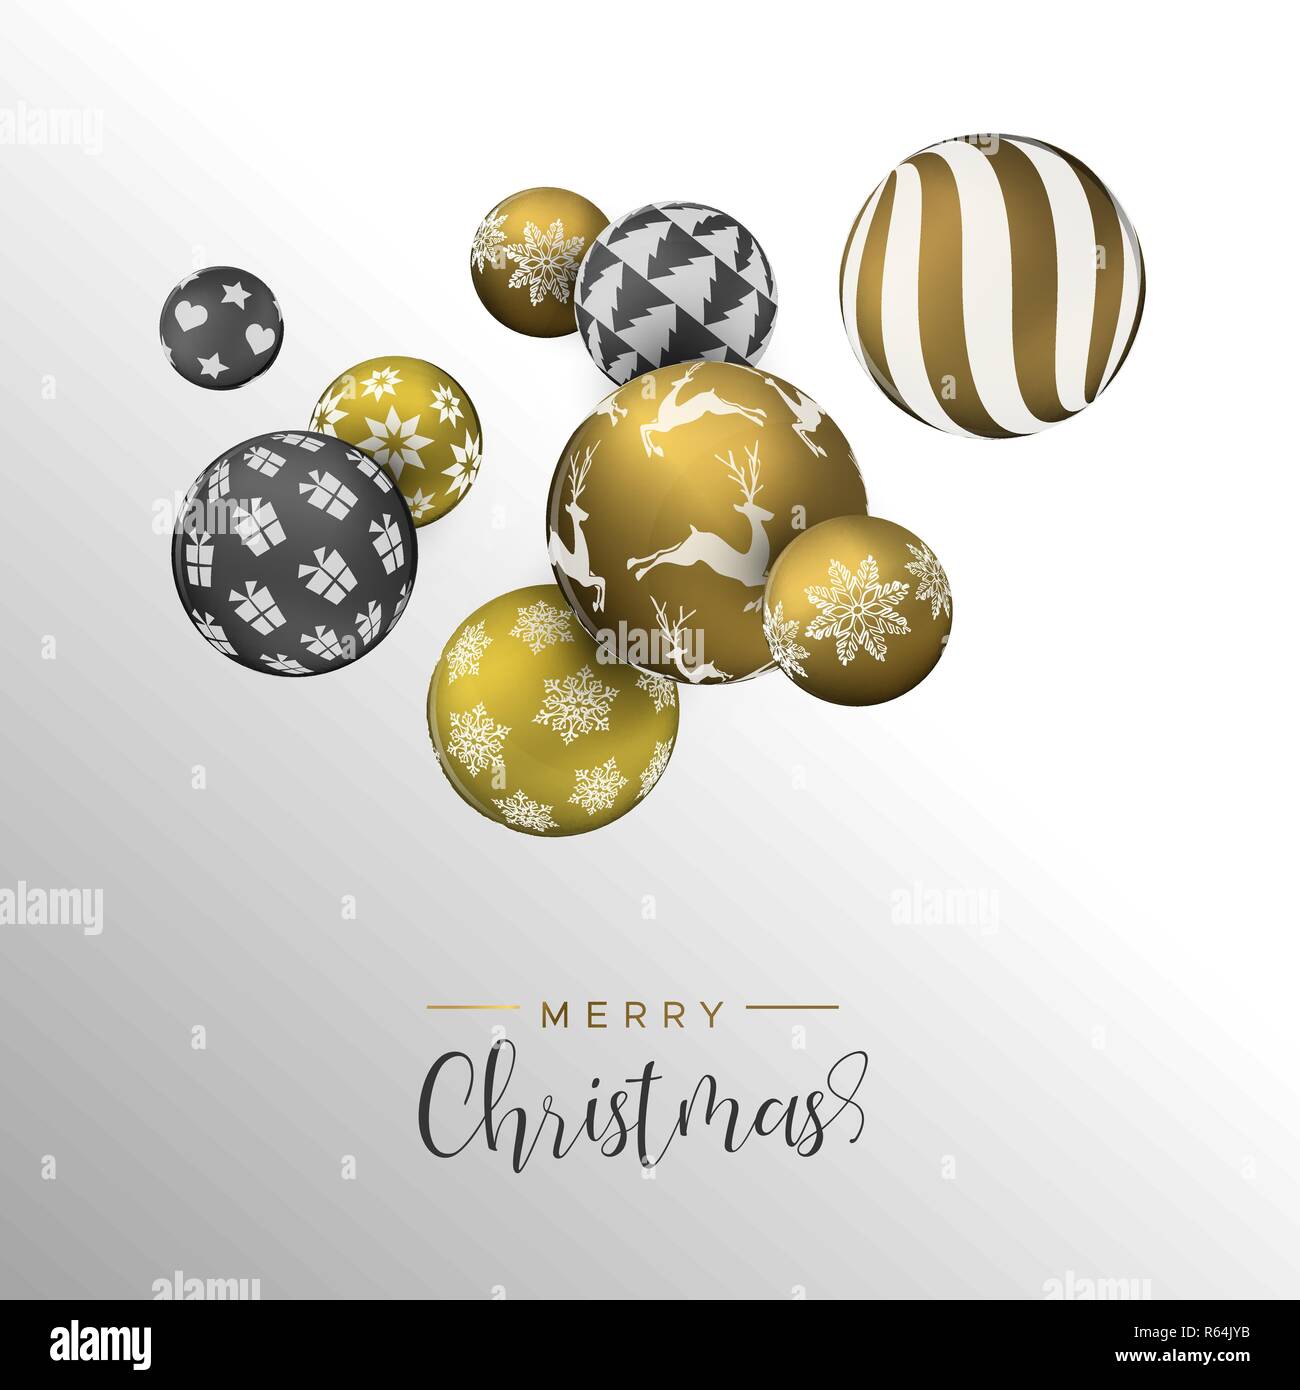 Merry Christmas Card, Gold und Schwarz xmas bauble Ornamente. Luxus Urlaub Kugeln Hintergrund für die Einladung oder Jahreszeiten Gruß. Stock Vektor